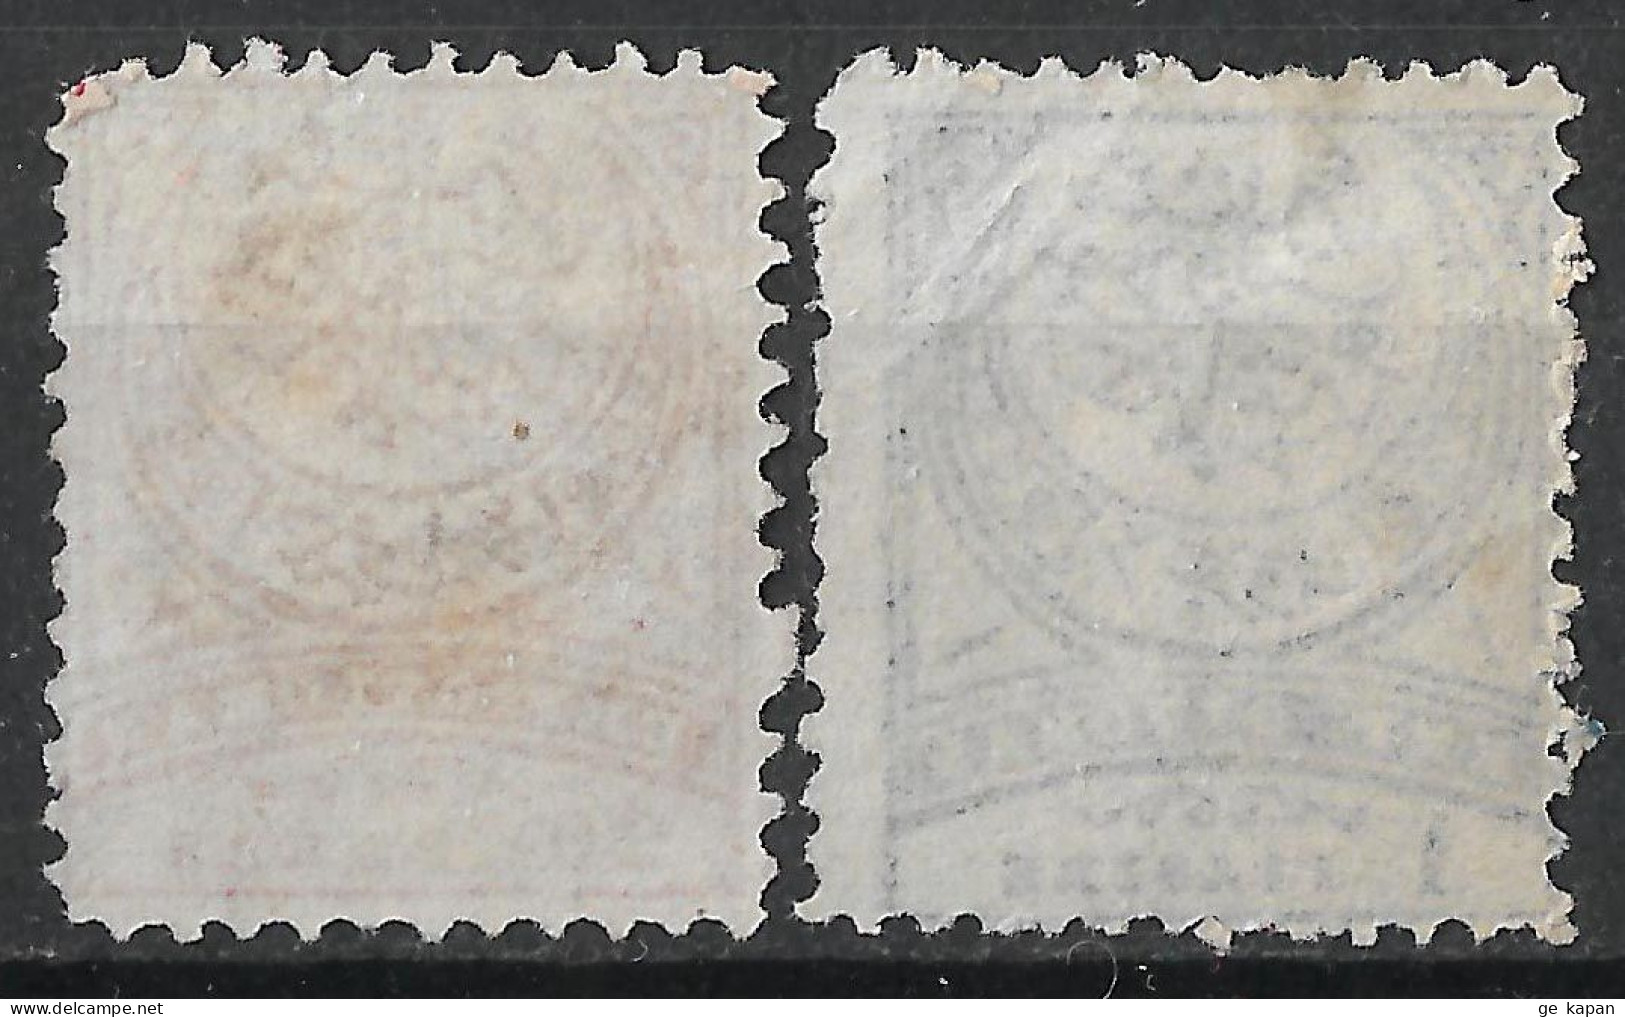 1890 TURKEY Set Of 2 Unused Stamps (Michel # 60B,61aB) CV €16.00 - Ungebraucht